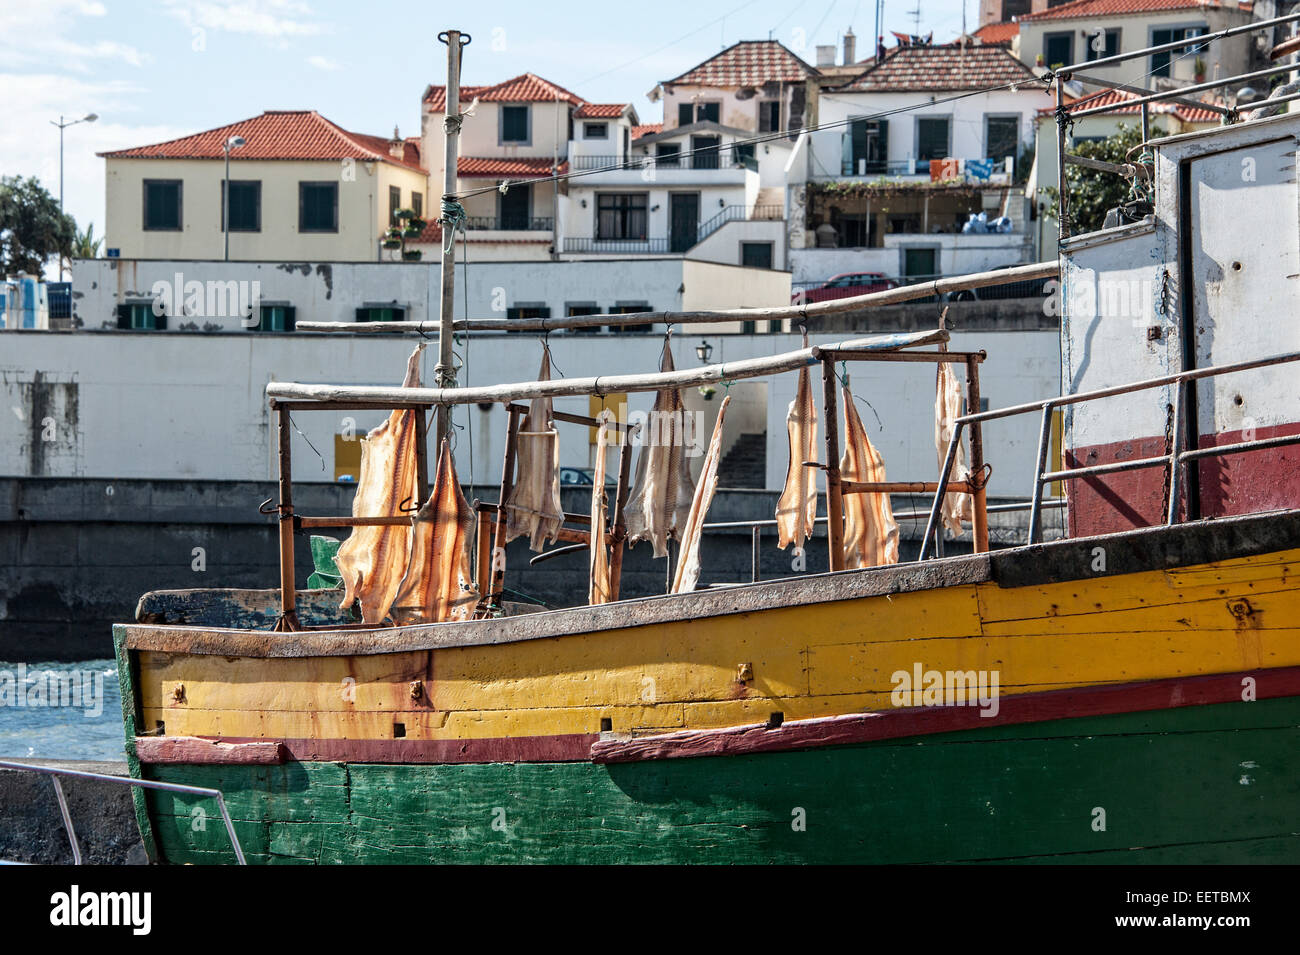 Reisen, Europa, il Portogallo, la Madera; Getrockneter Fisch, Stockfisch, Bacalhau auf einem Fischerboot im Hafen von Camara de Lobos. Foto Stock